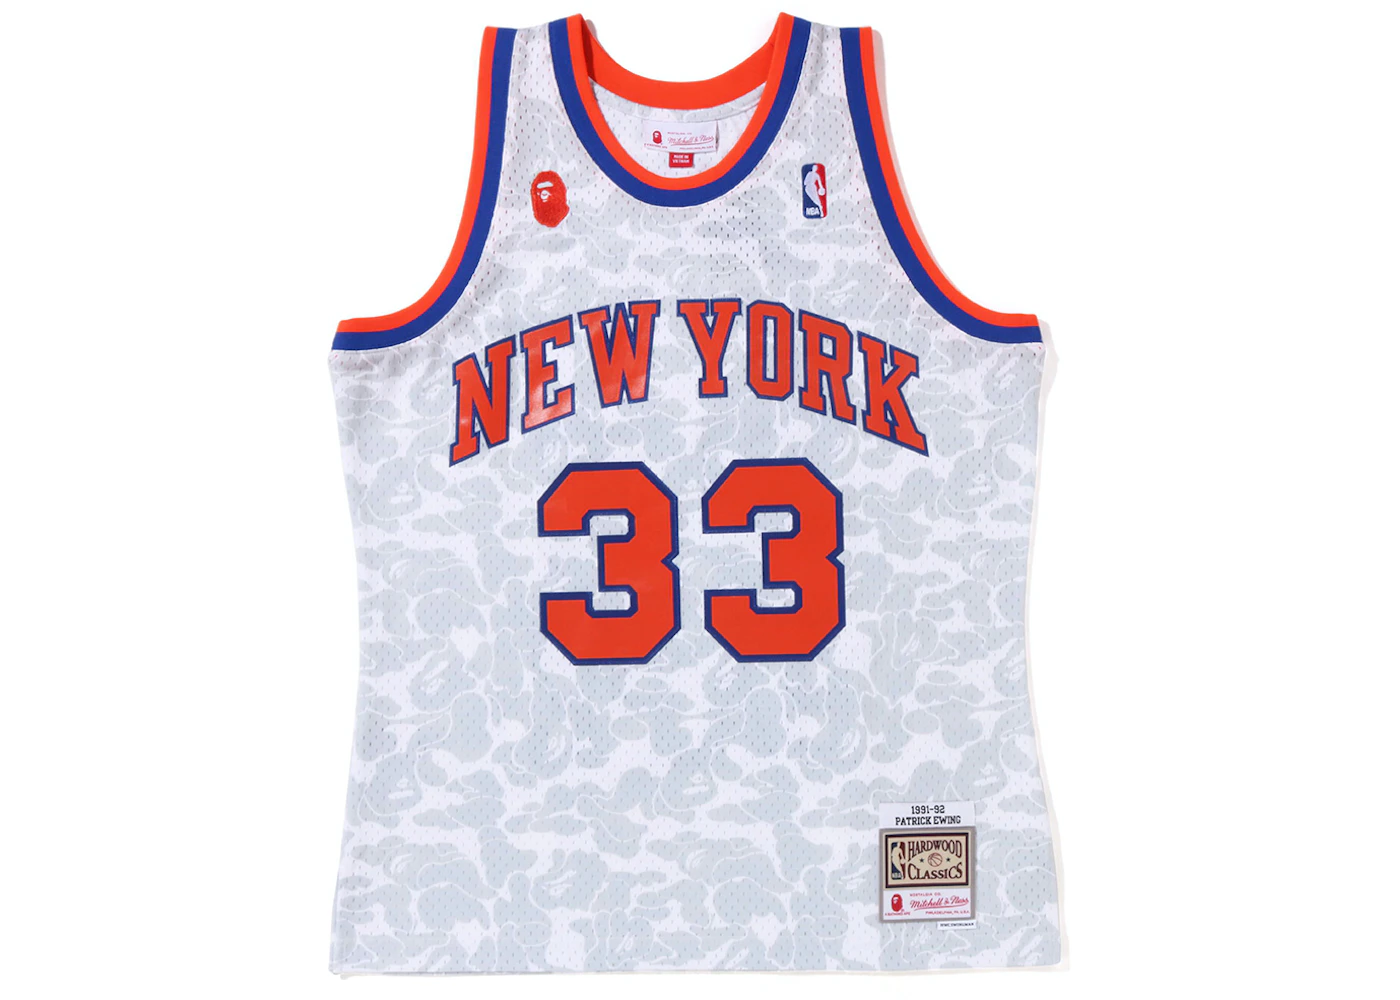 UNINTERRUPTED X Mitchell & Ness Legends Jersey Knicks